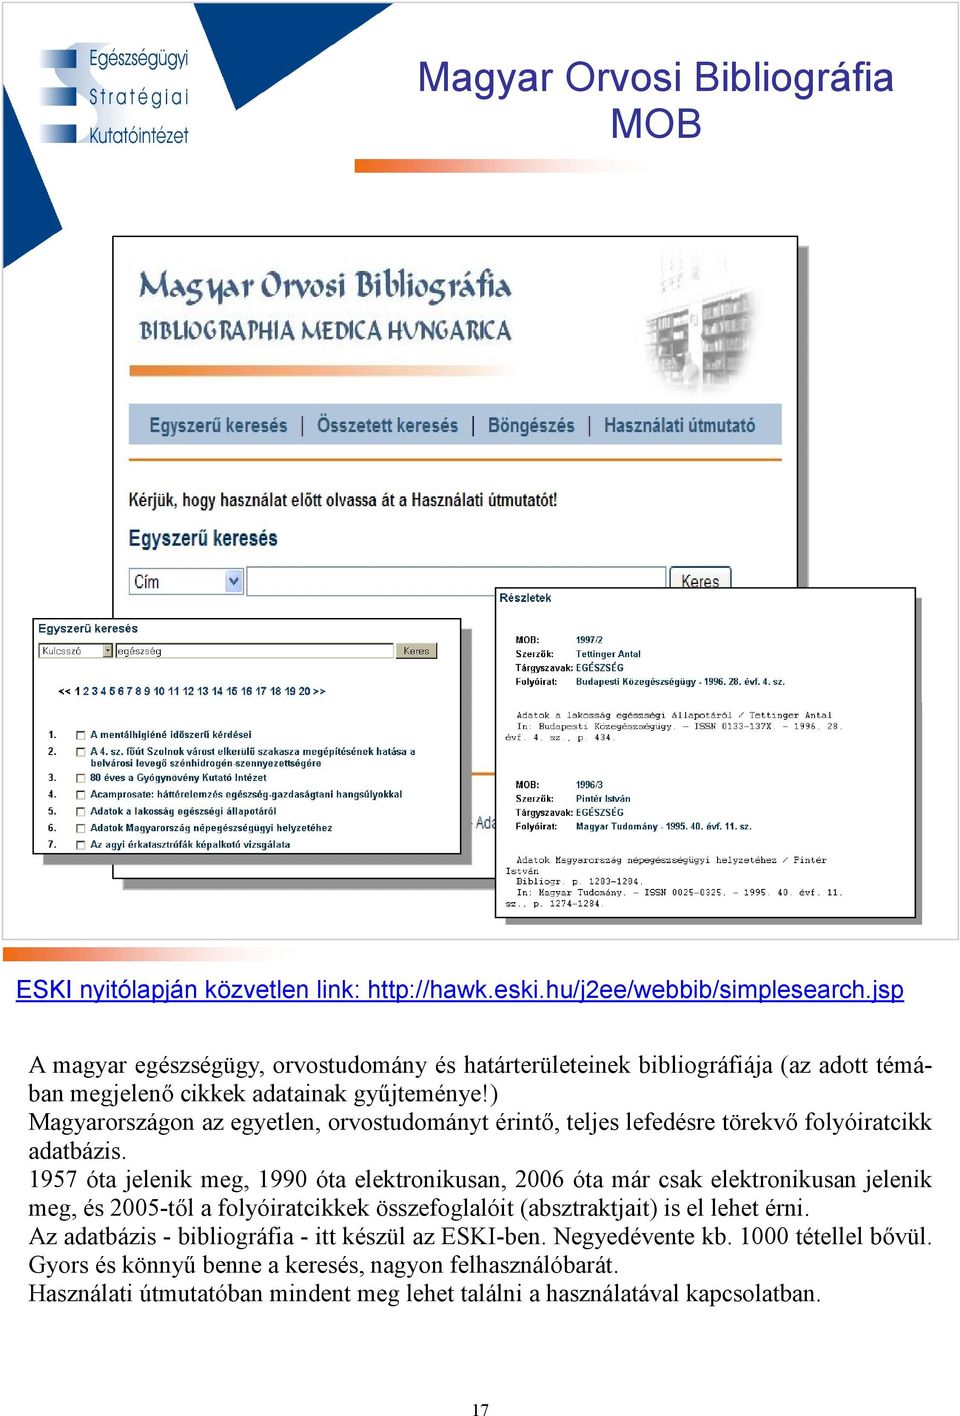 ) Magyarországon az egyetlen, orvostudományt érintı, teljes lefedésre törekvı folyóiratcikk adatbázis.